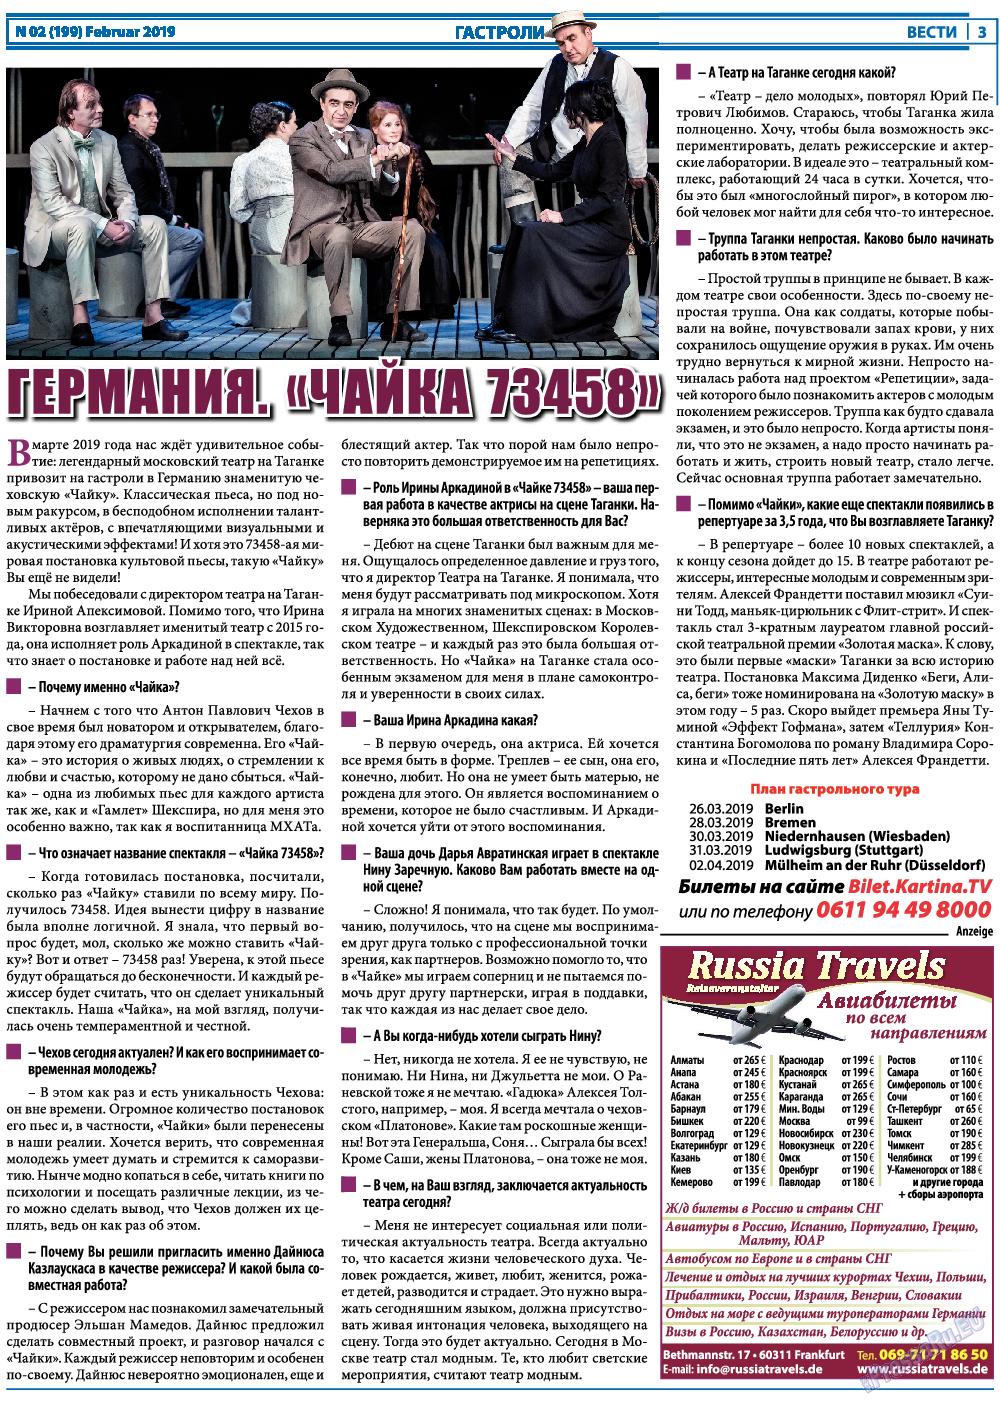 Вести, газета. 2019 №2 стр.3